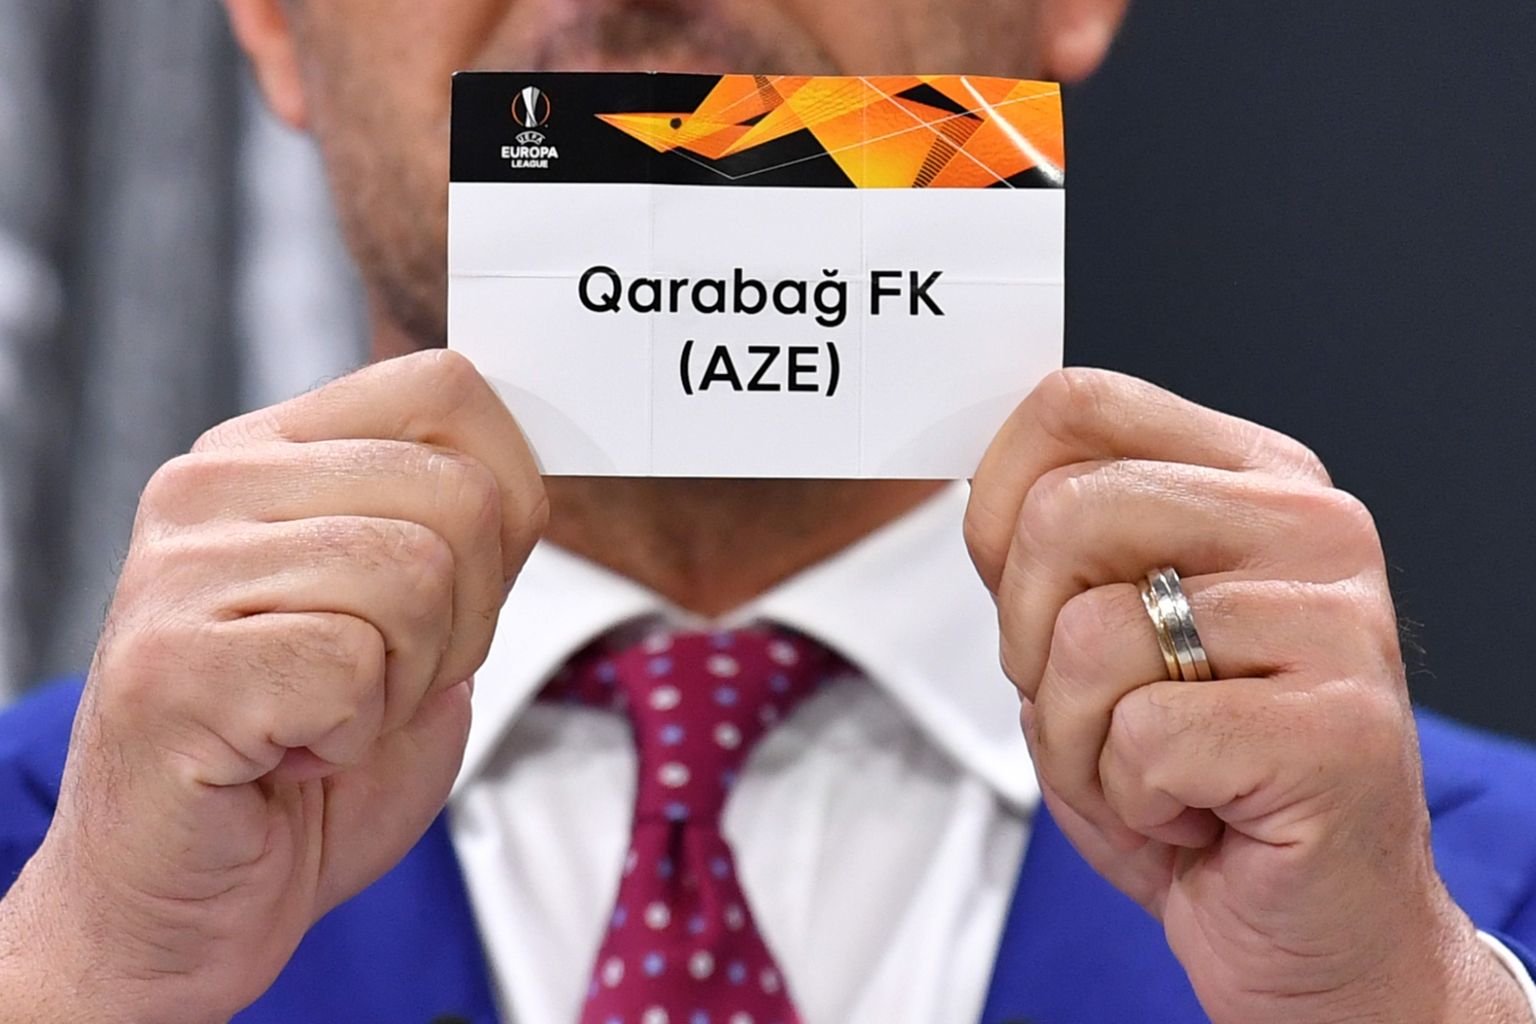 Qarabağ FK osales 2. oktoobril 2020 UEFA Euroopa Liiga alagruppide loosimisel.